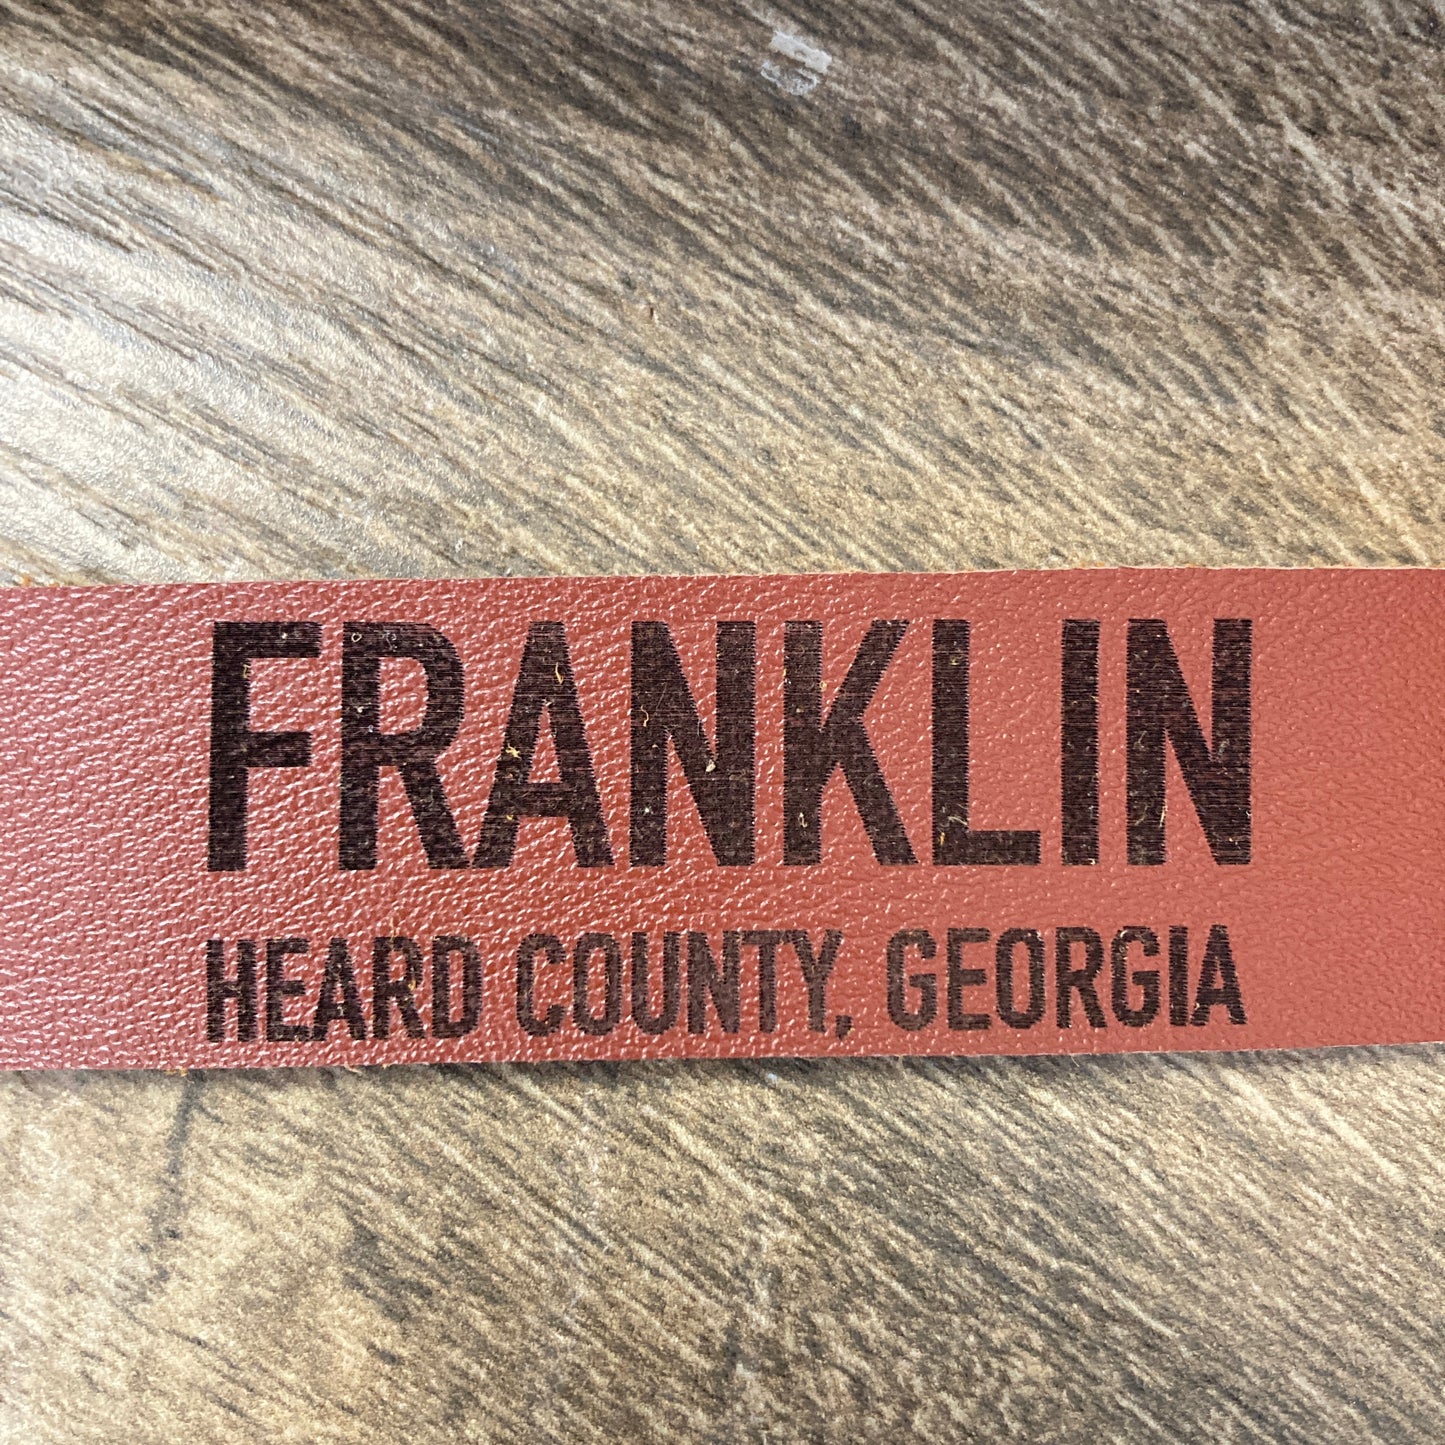 Franklin Georgia Leather Keychain